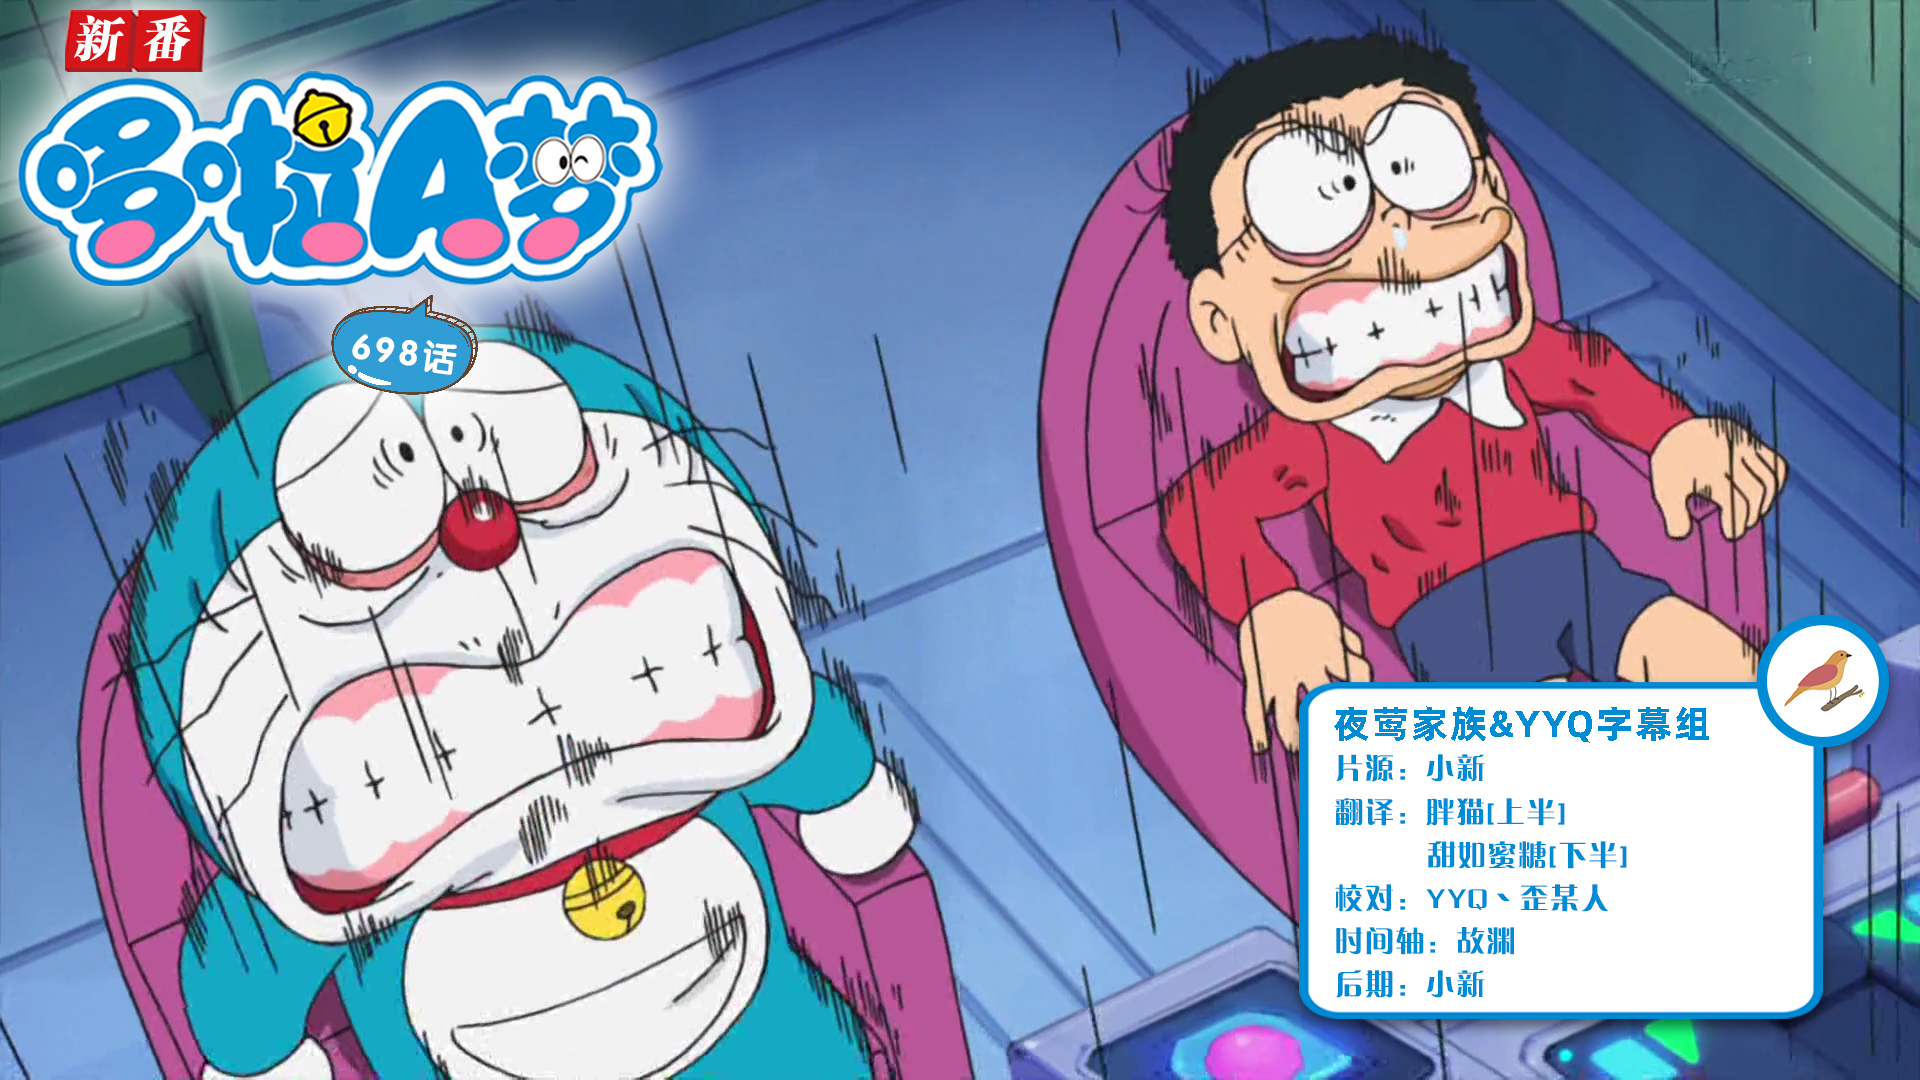 [夜莺家族]New Doraemon 哆啦A梦新番[698][2022.03.19][AVC][1080P][GB_JP]插图icecomic动漫-云之彼端,约定的地方(´･ᴗ･`)2